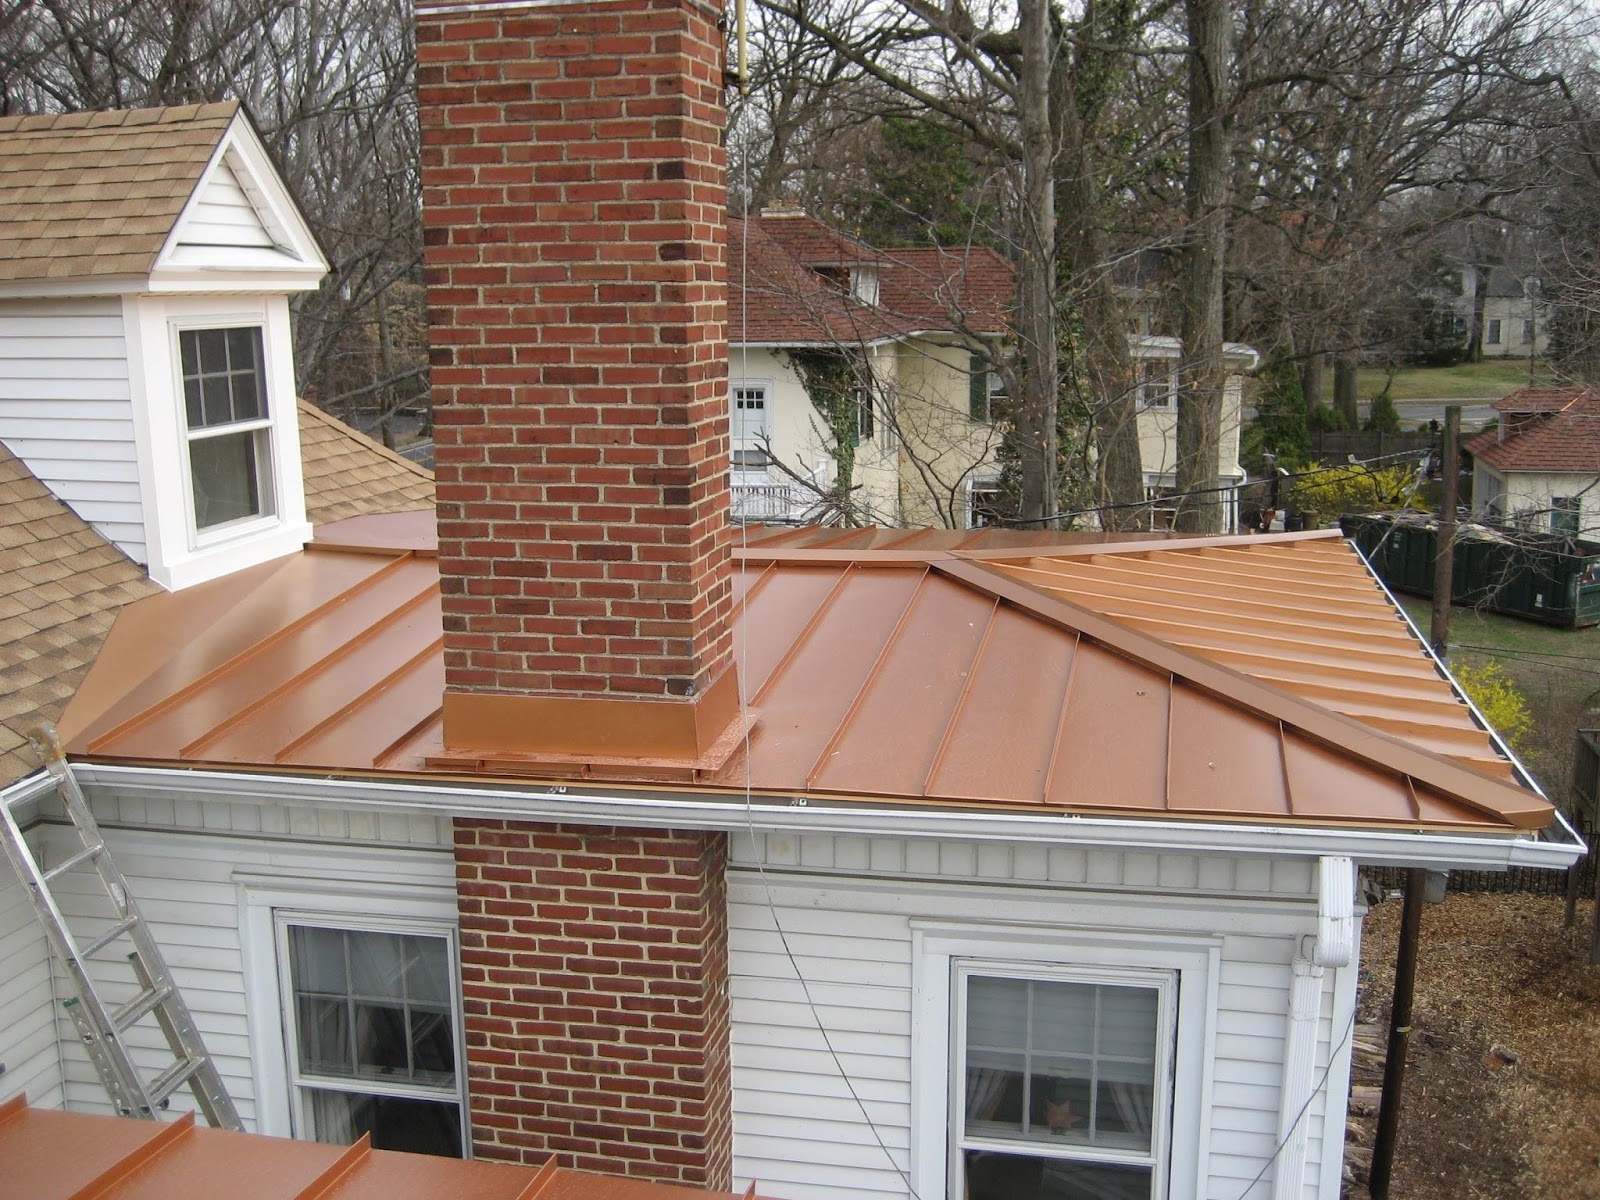 Flat roof materials